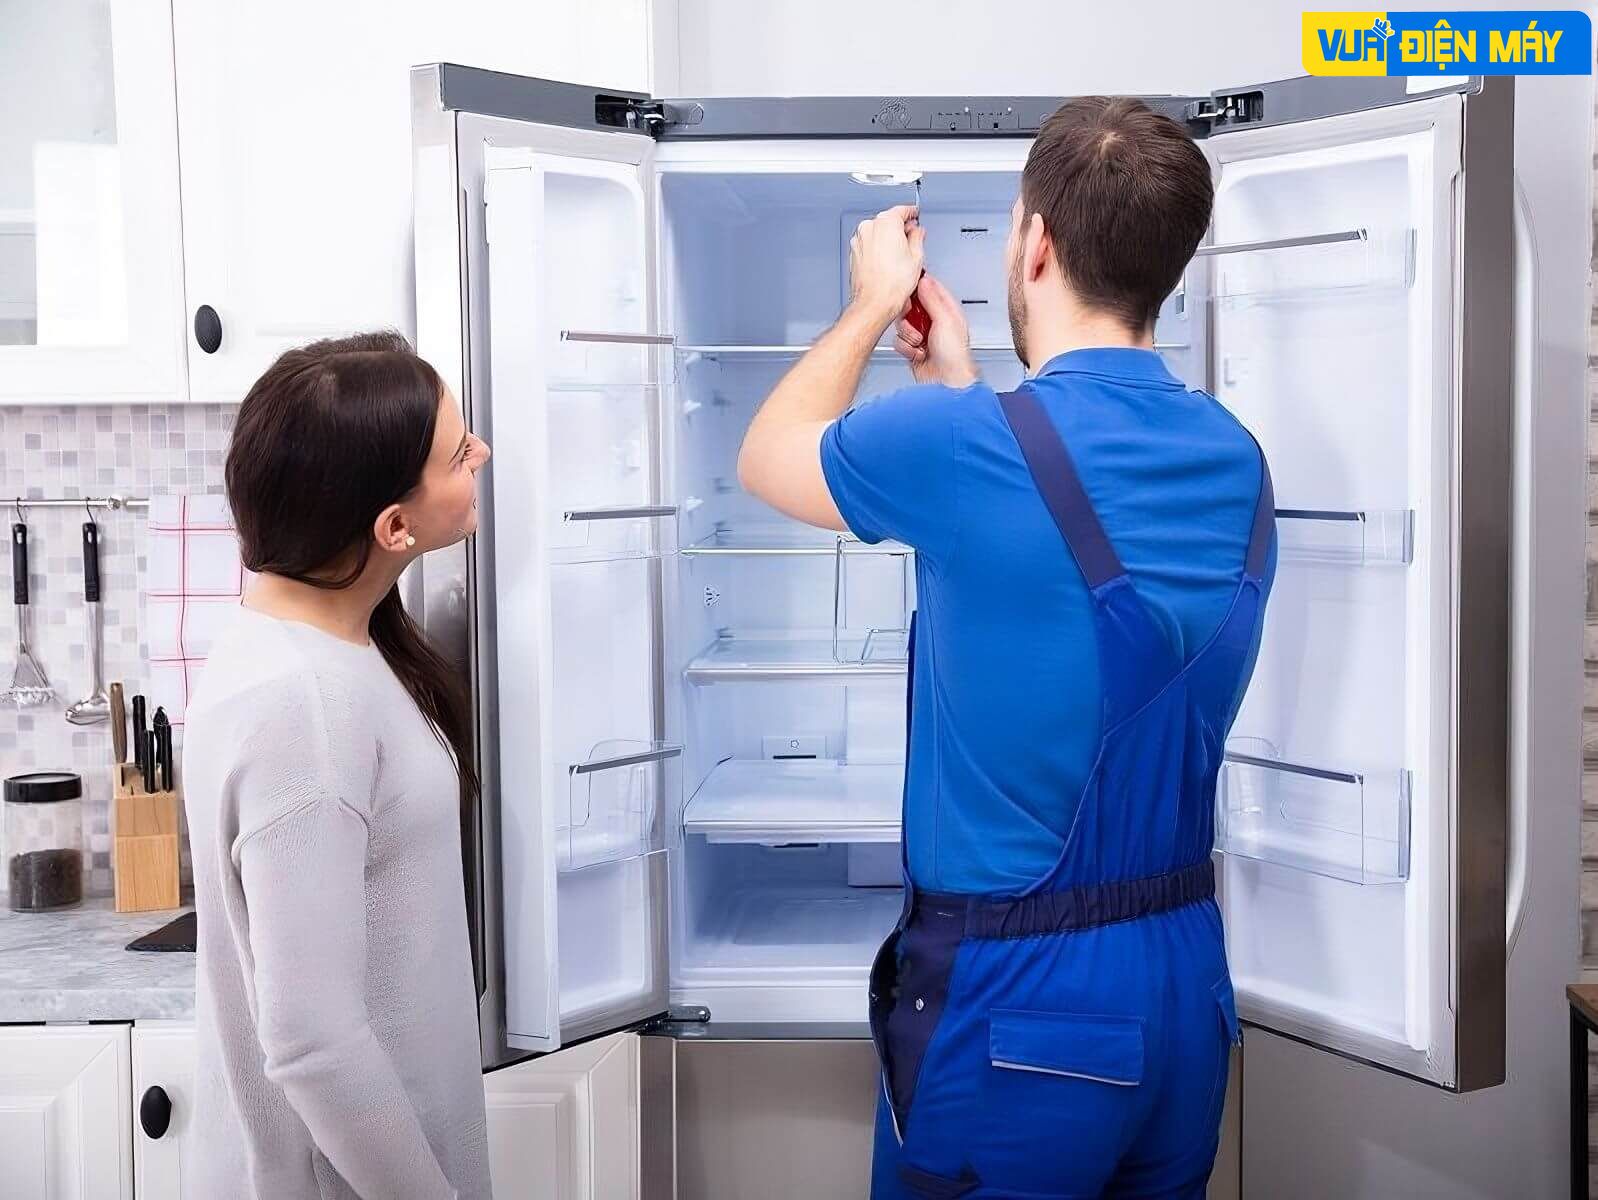 Quy trình dịch vụ sửa tủ lạnh tại nhà huyện Hóc Môn